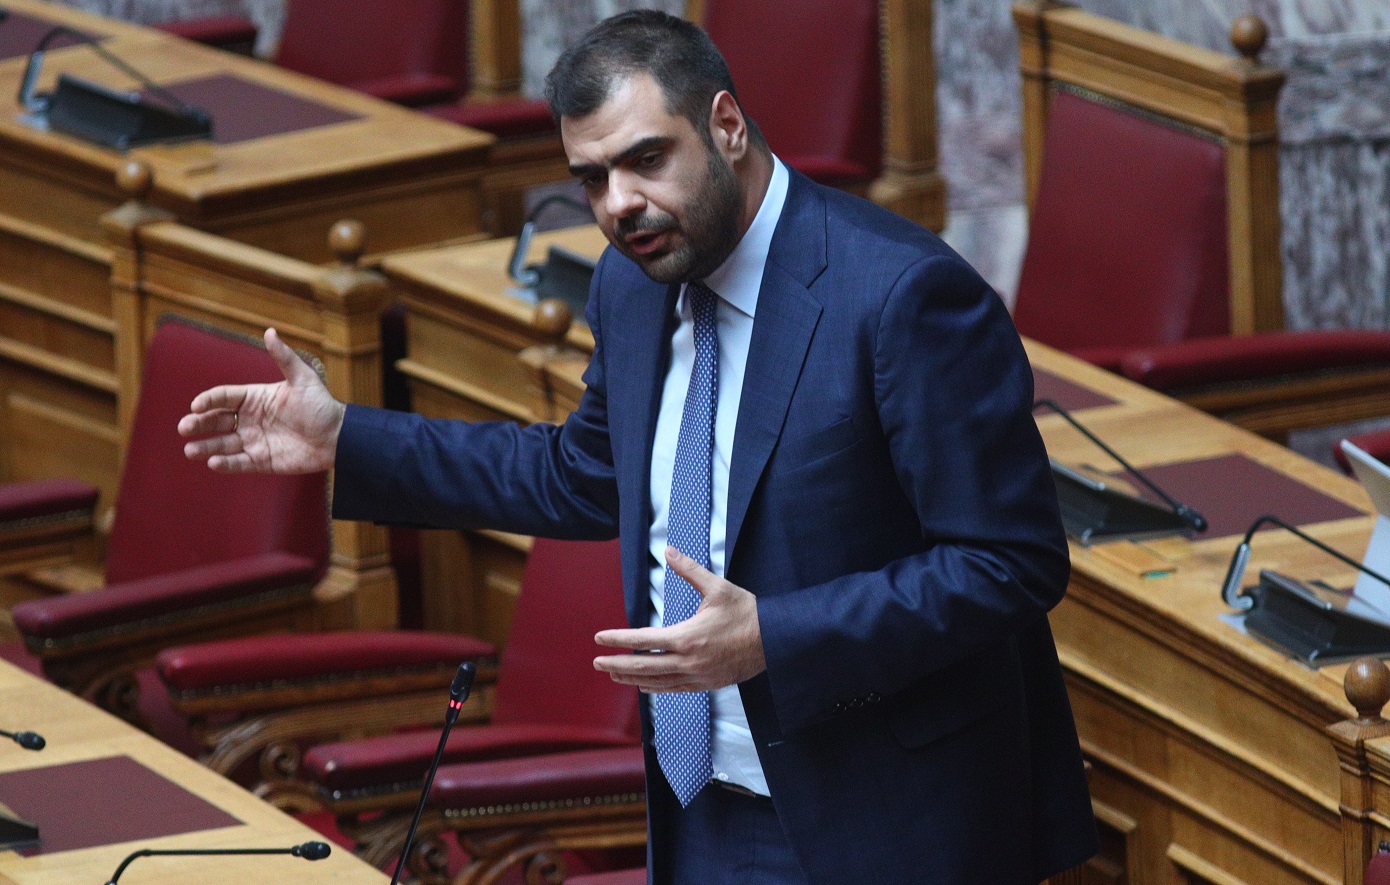 Παύλος Μαρινάκης: Η ΕΡΤ θα συνεχίσει με το καθεστώς πενθήμερης εργασίας, είναι πρόθεση και της Διοίκησης